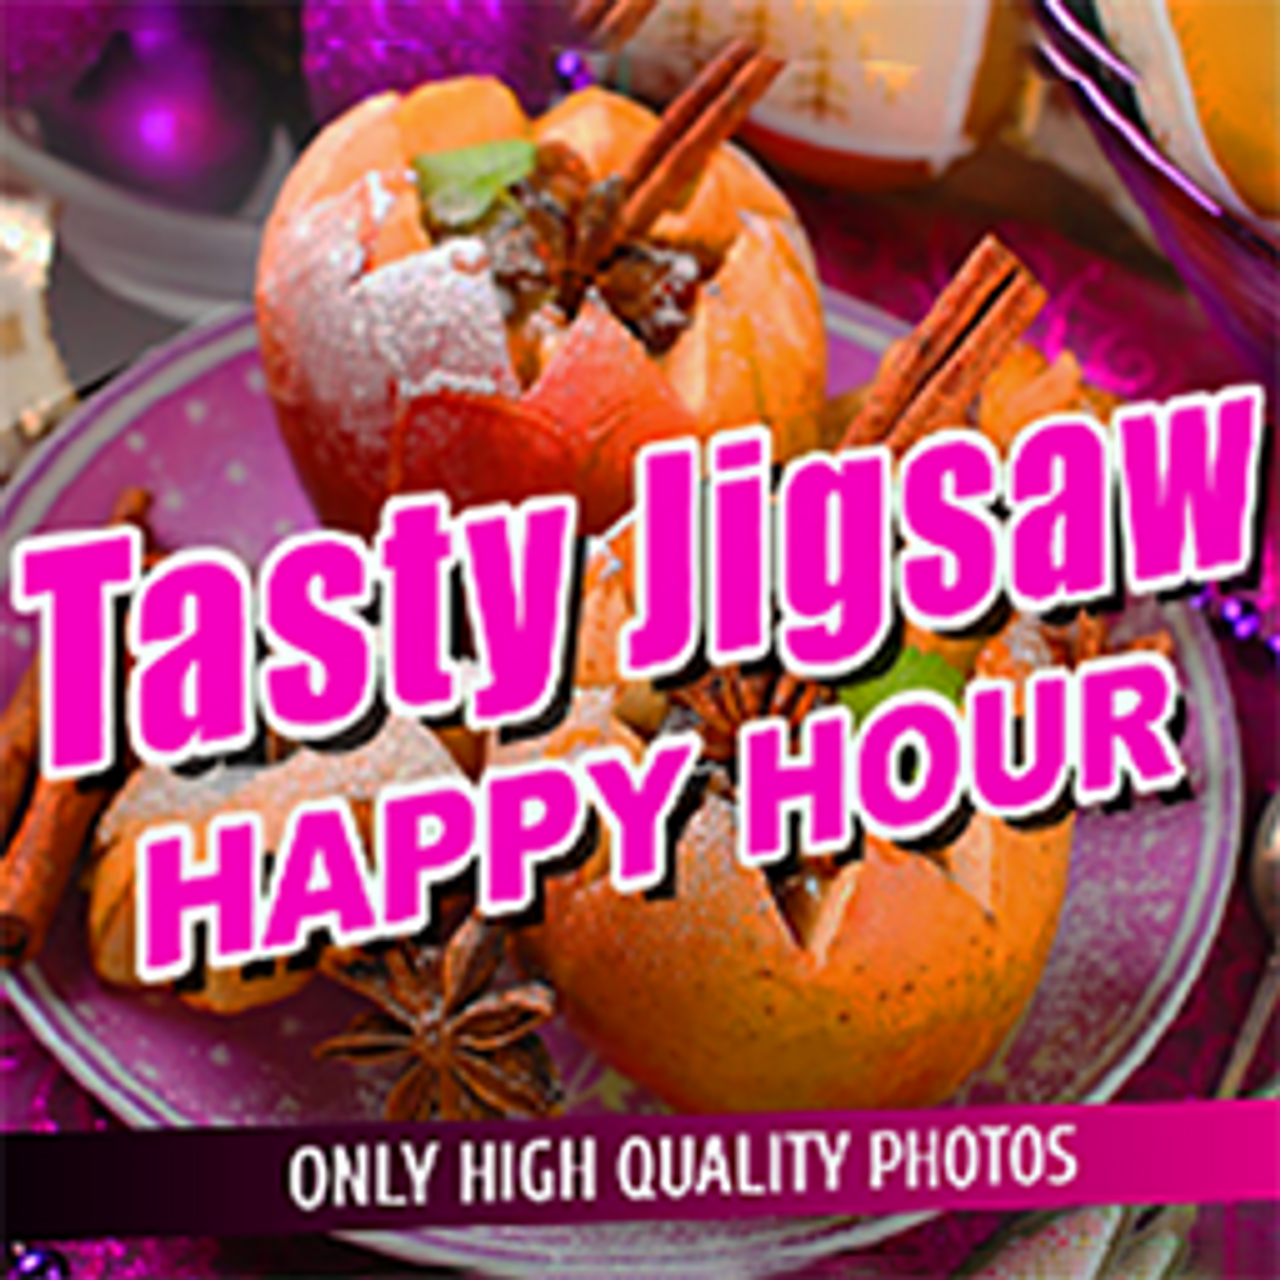 Tasty Jigsaw Happy Hour